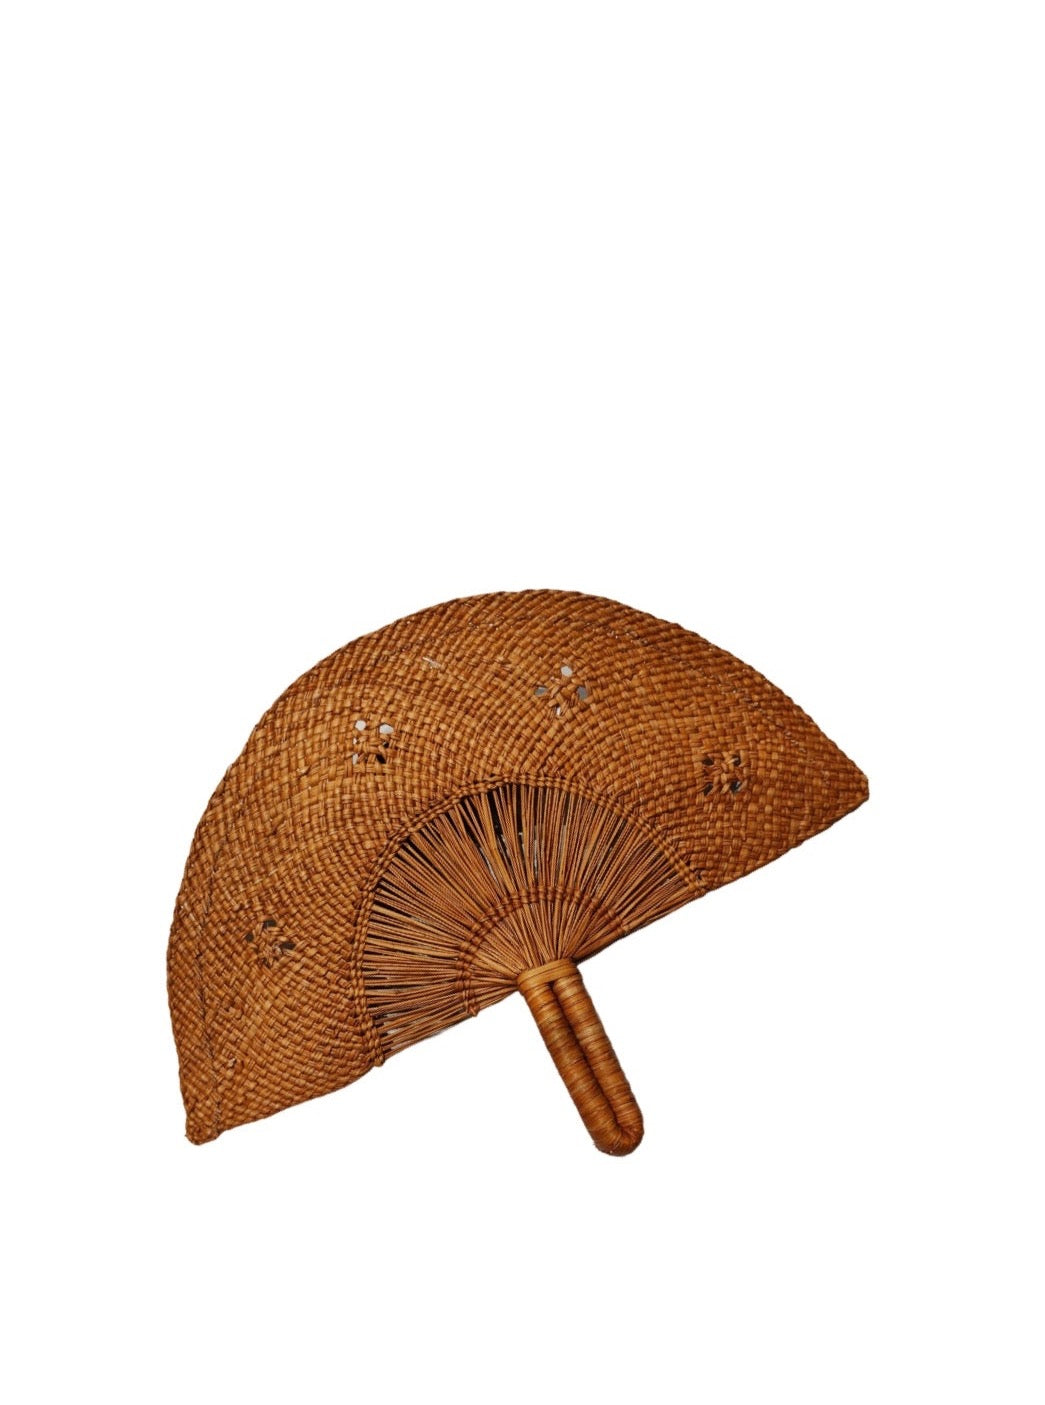 Handwoven fan, caramel brown